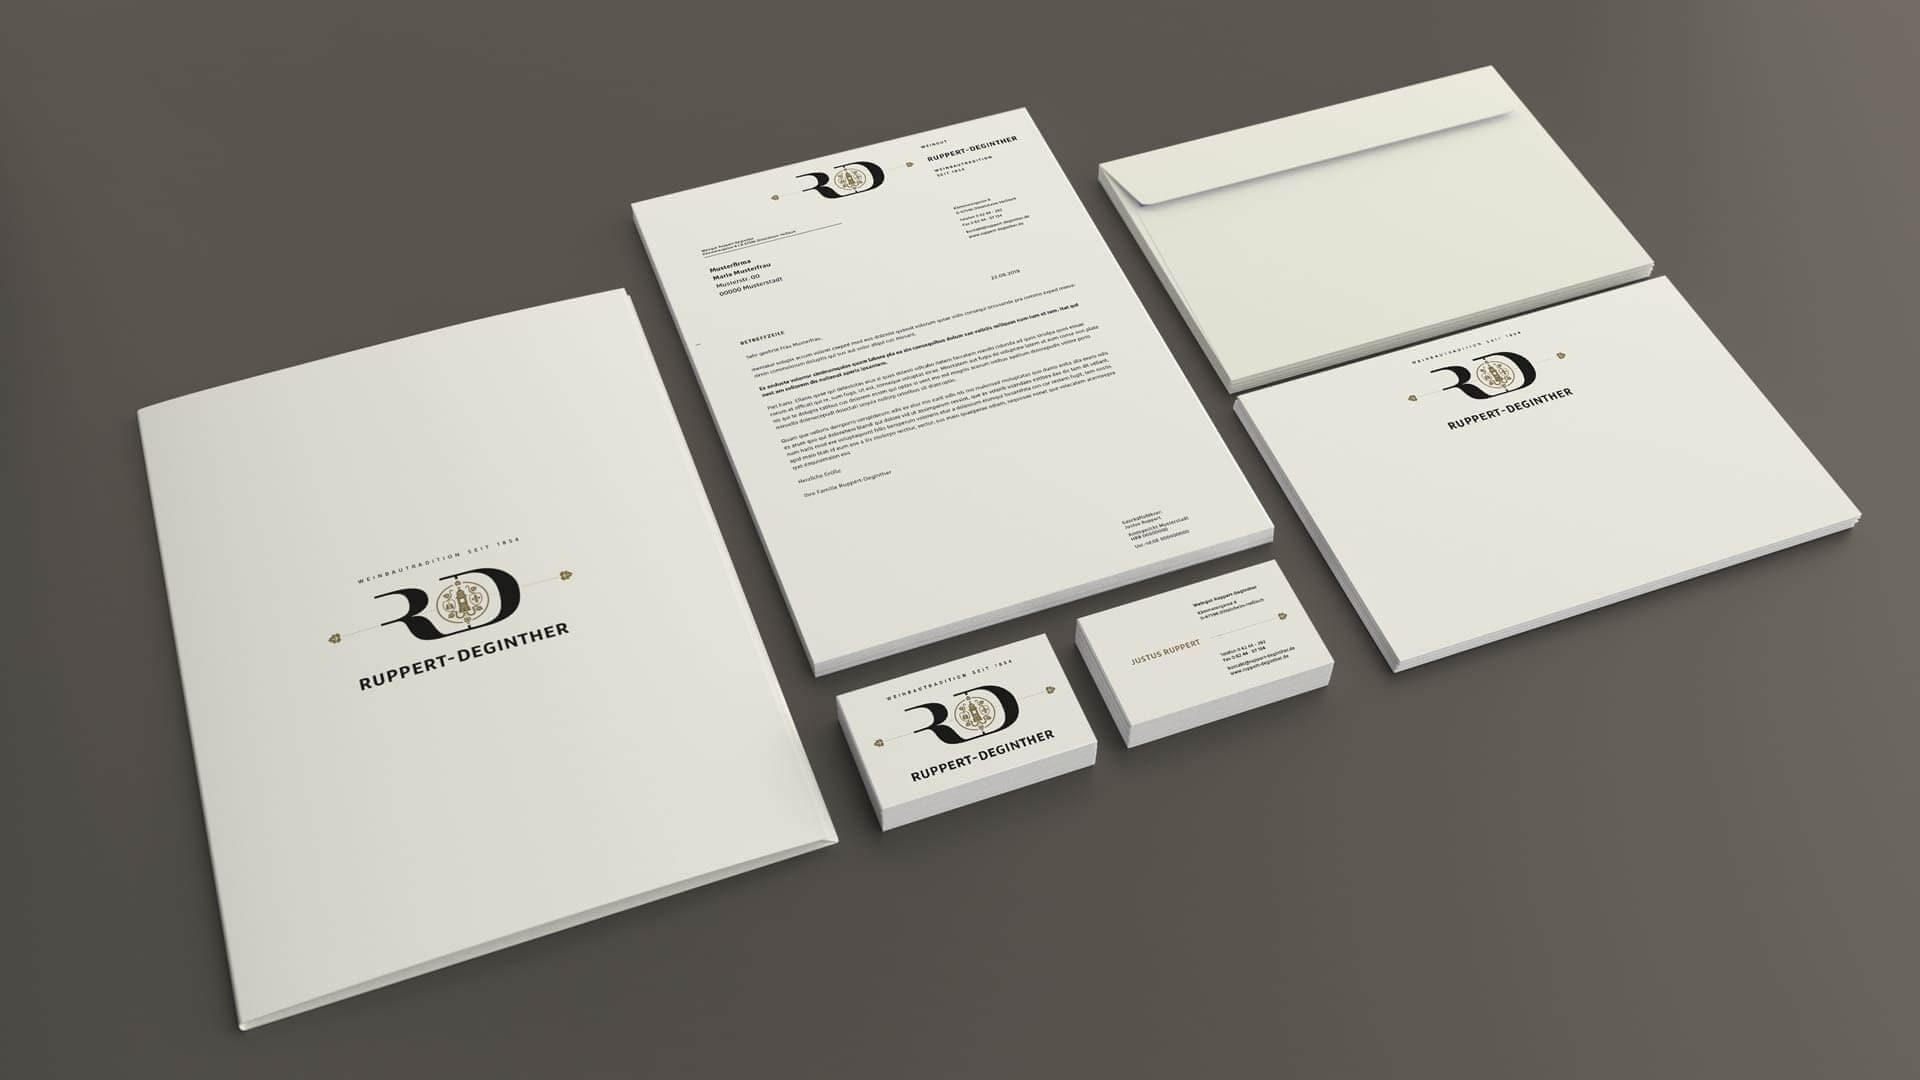 Corporate Identity Design für Ruppert-Deginther | Ein ausgezeichnetes Weingut in Rheinhessen | Darstellung der Geschäftsausstattung (Mappe, Briefpapier, Visitenkarten, Kuverts)